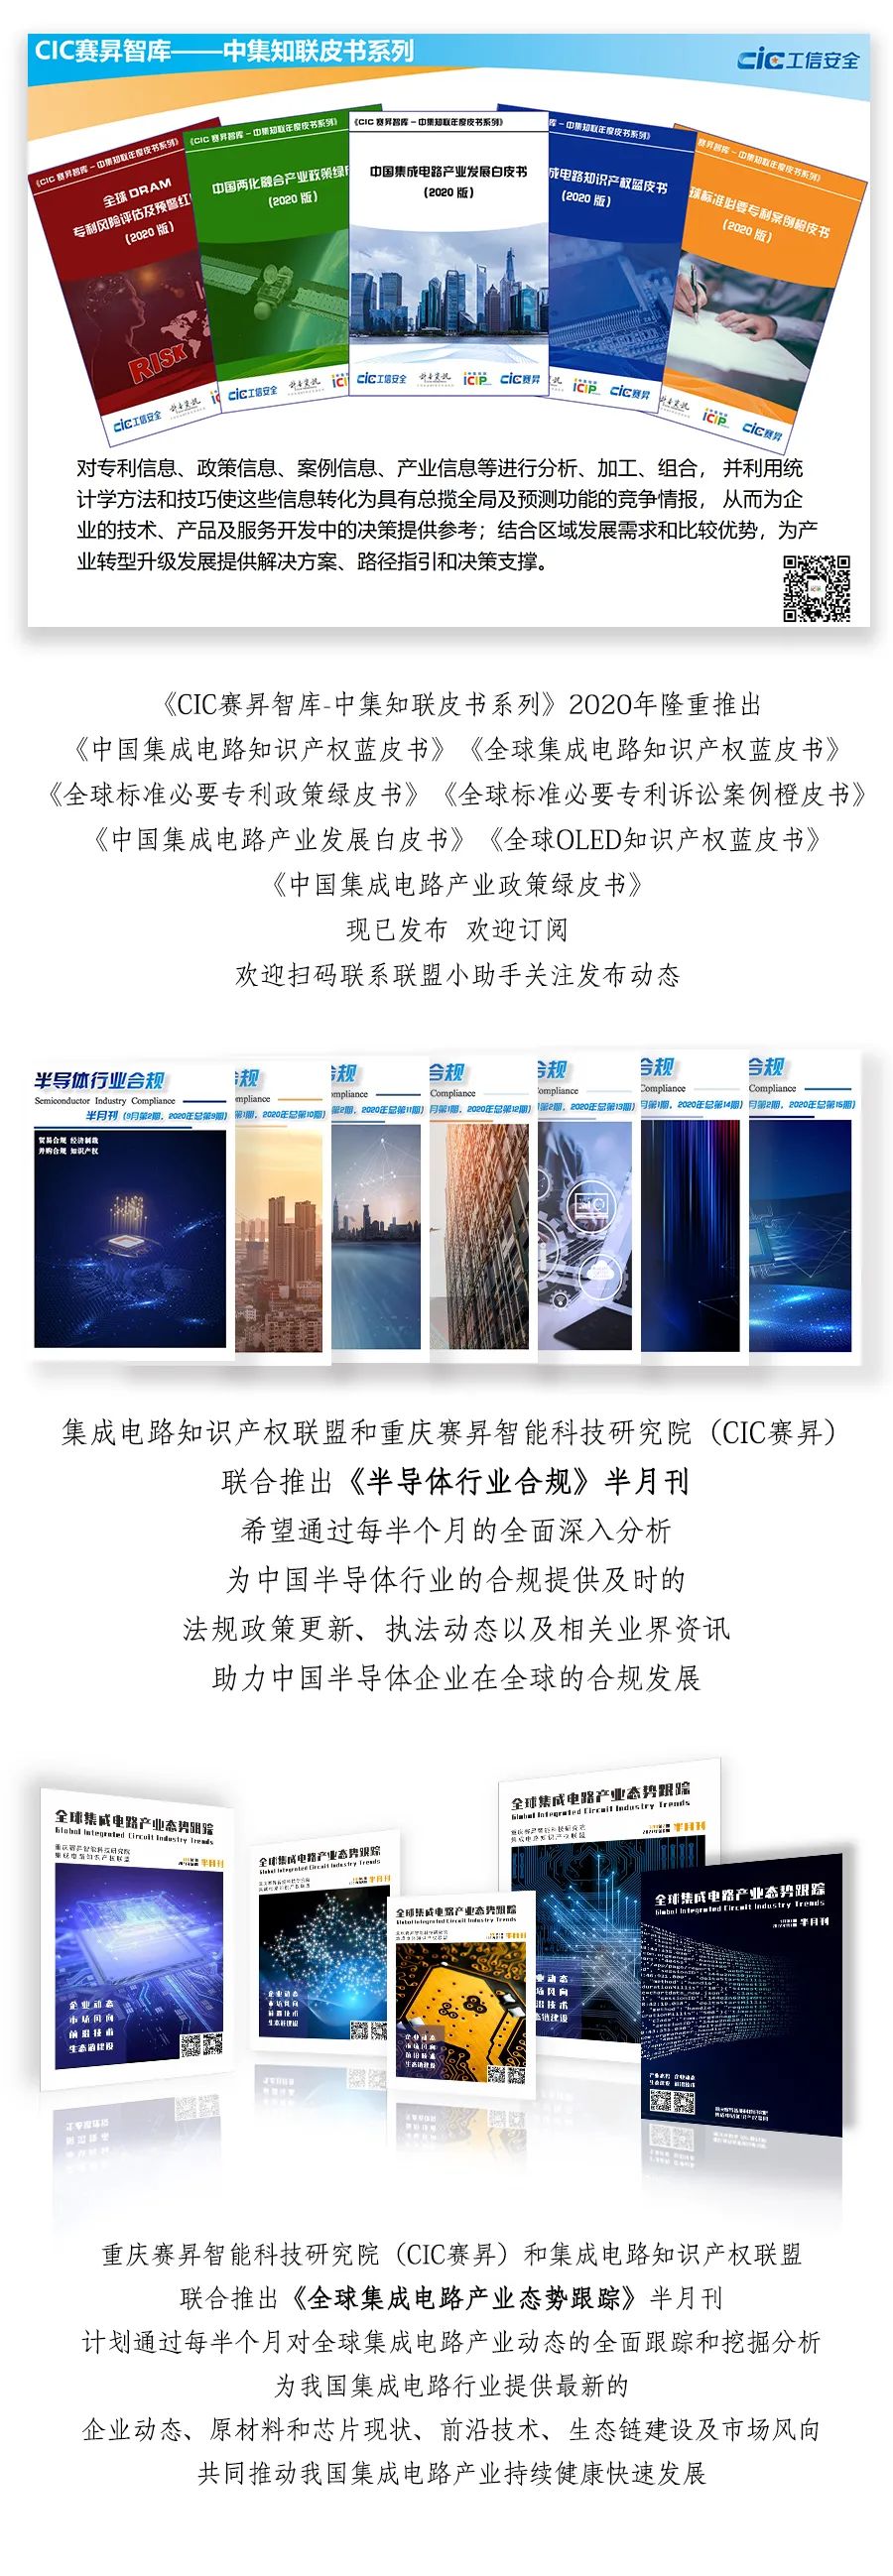  热烈欢迎北京国导科技有限公司加入联盟